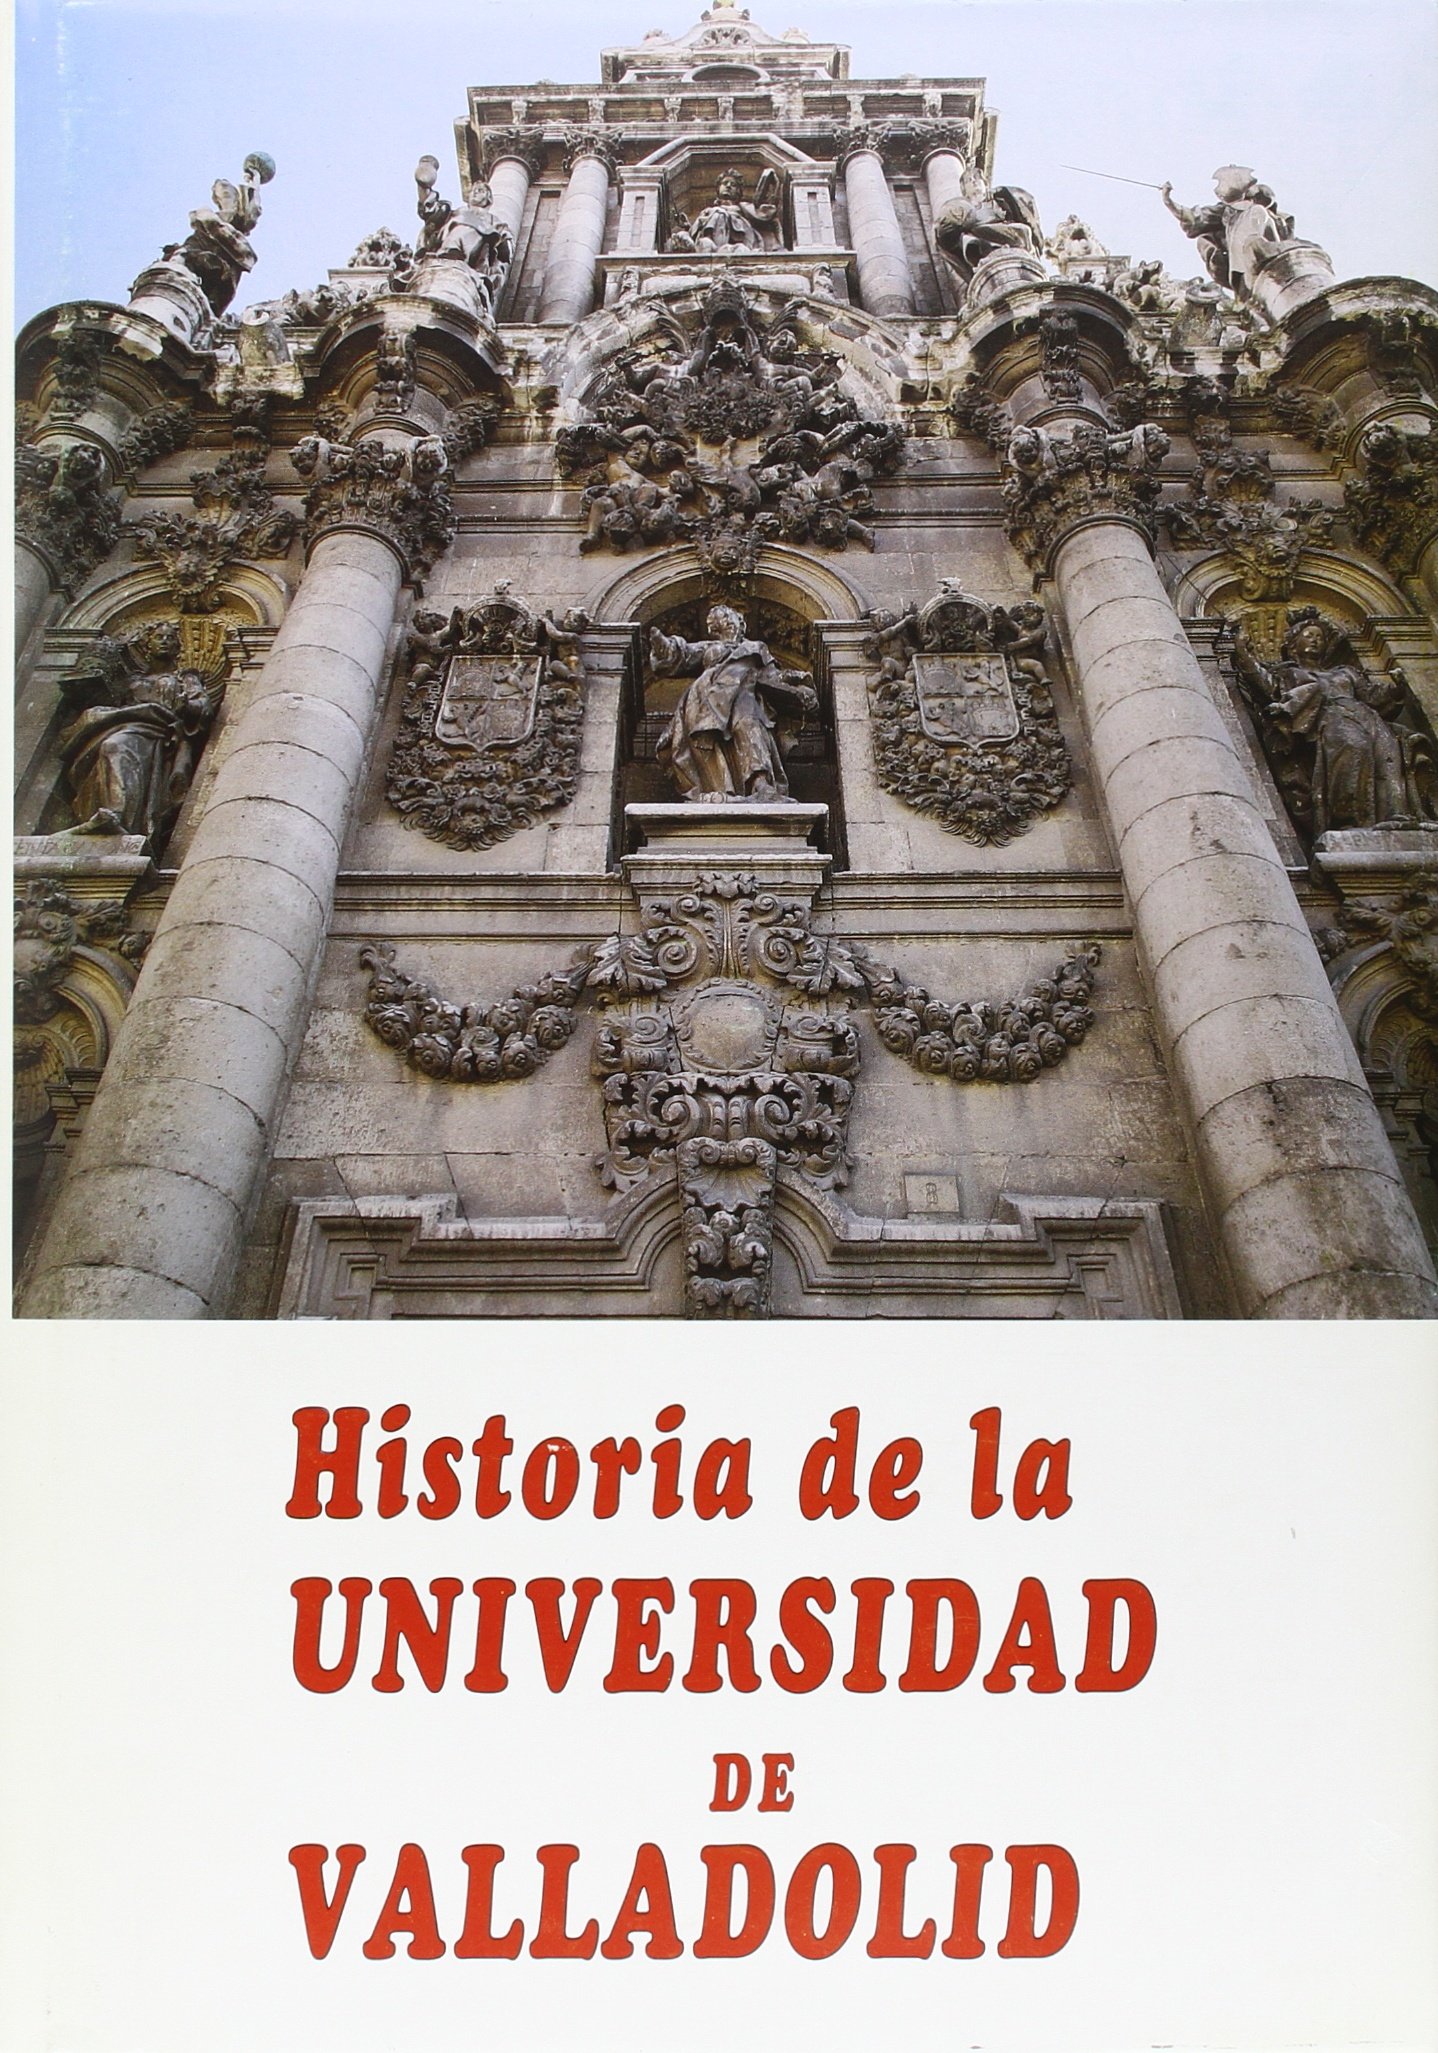 Imagen de portada del libro Historia de la Universidad de Valladolid